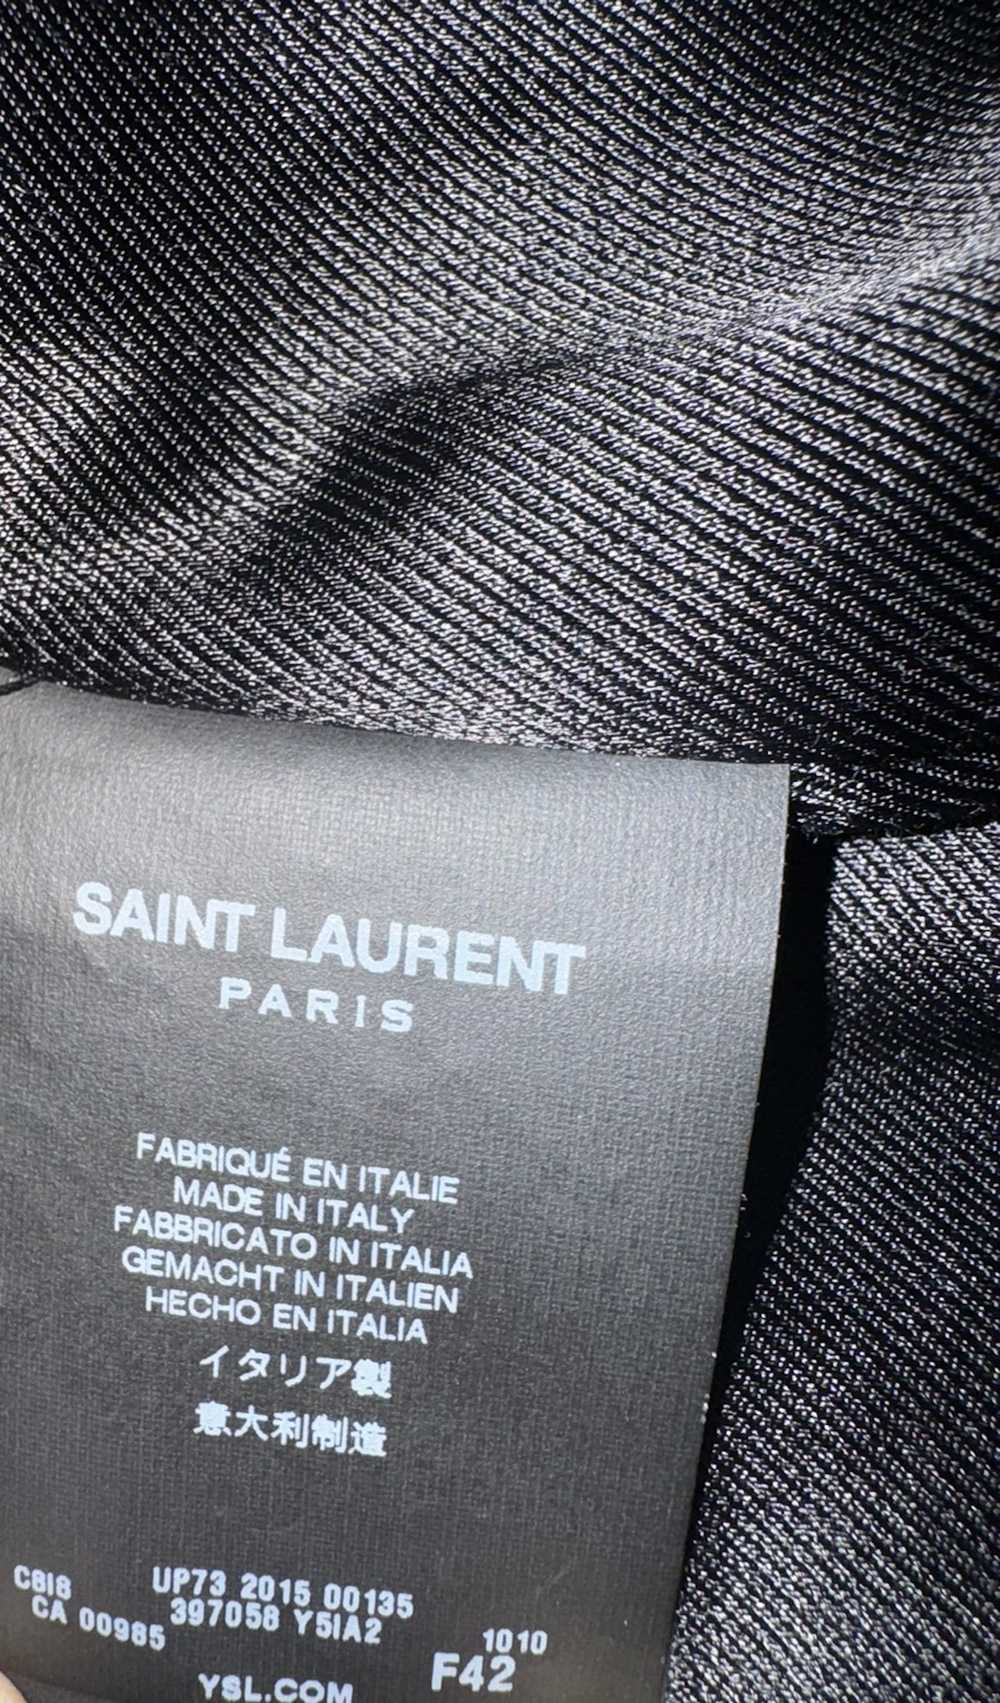 Saint Laurent Paris Black Leather Moto Jacket - image 8